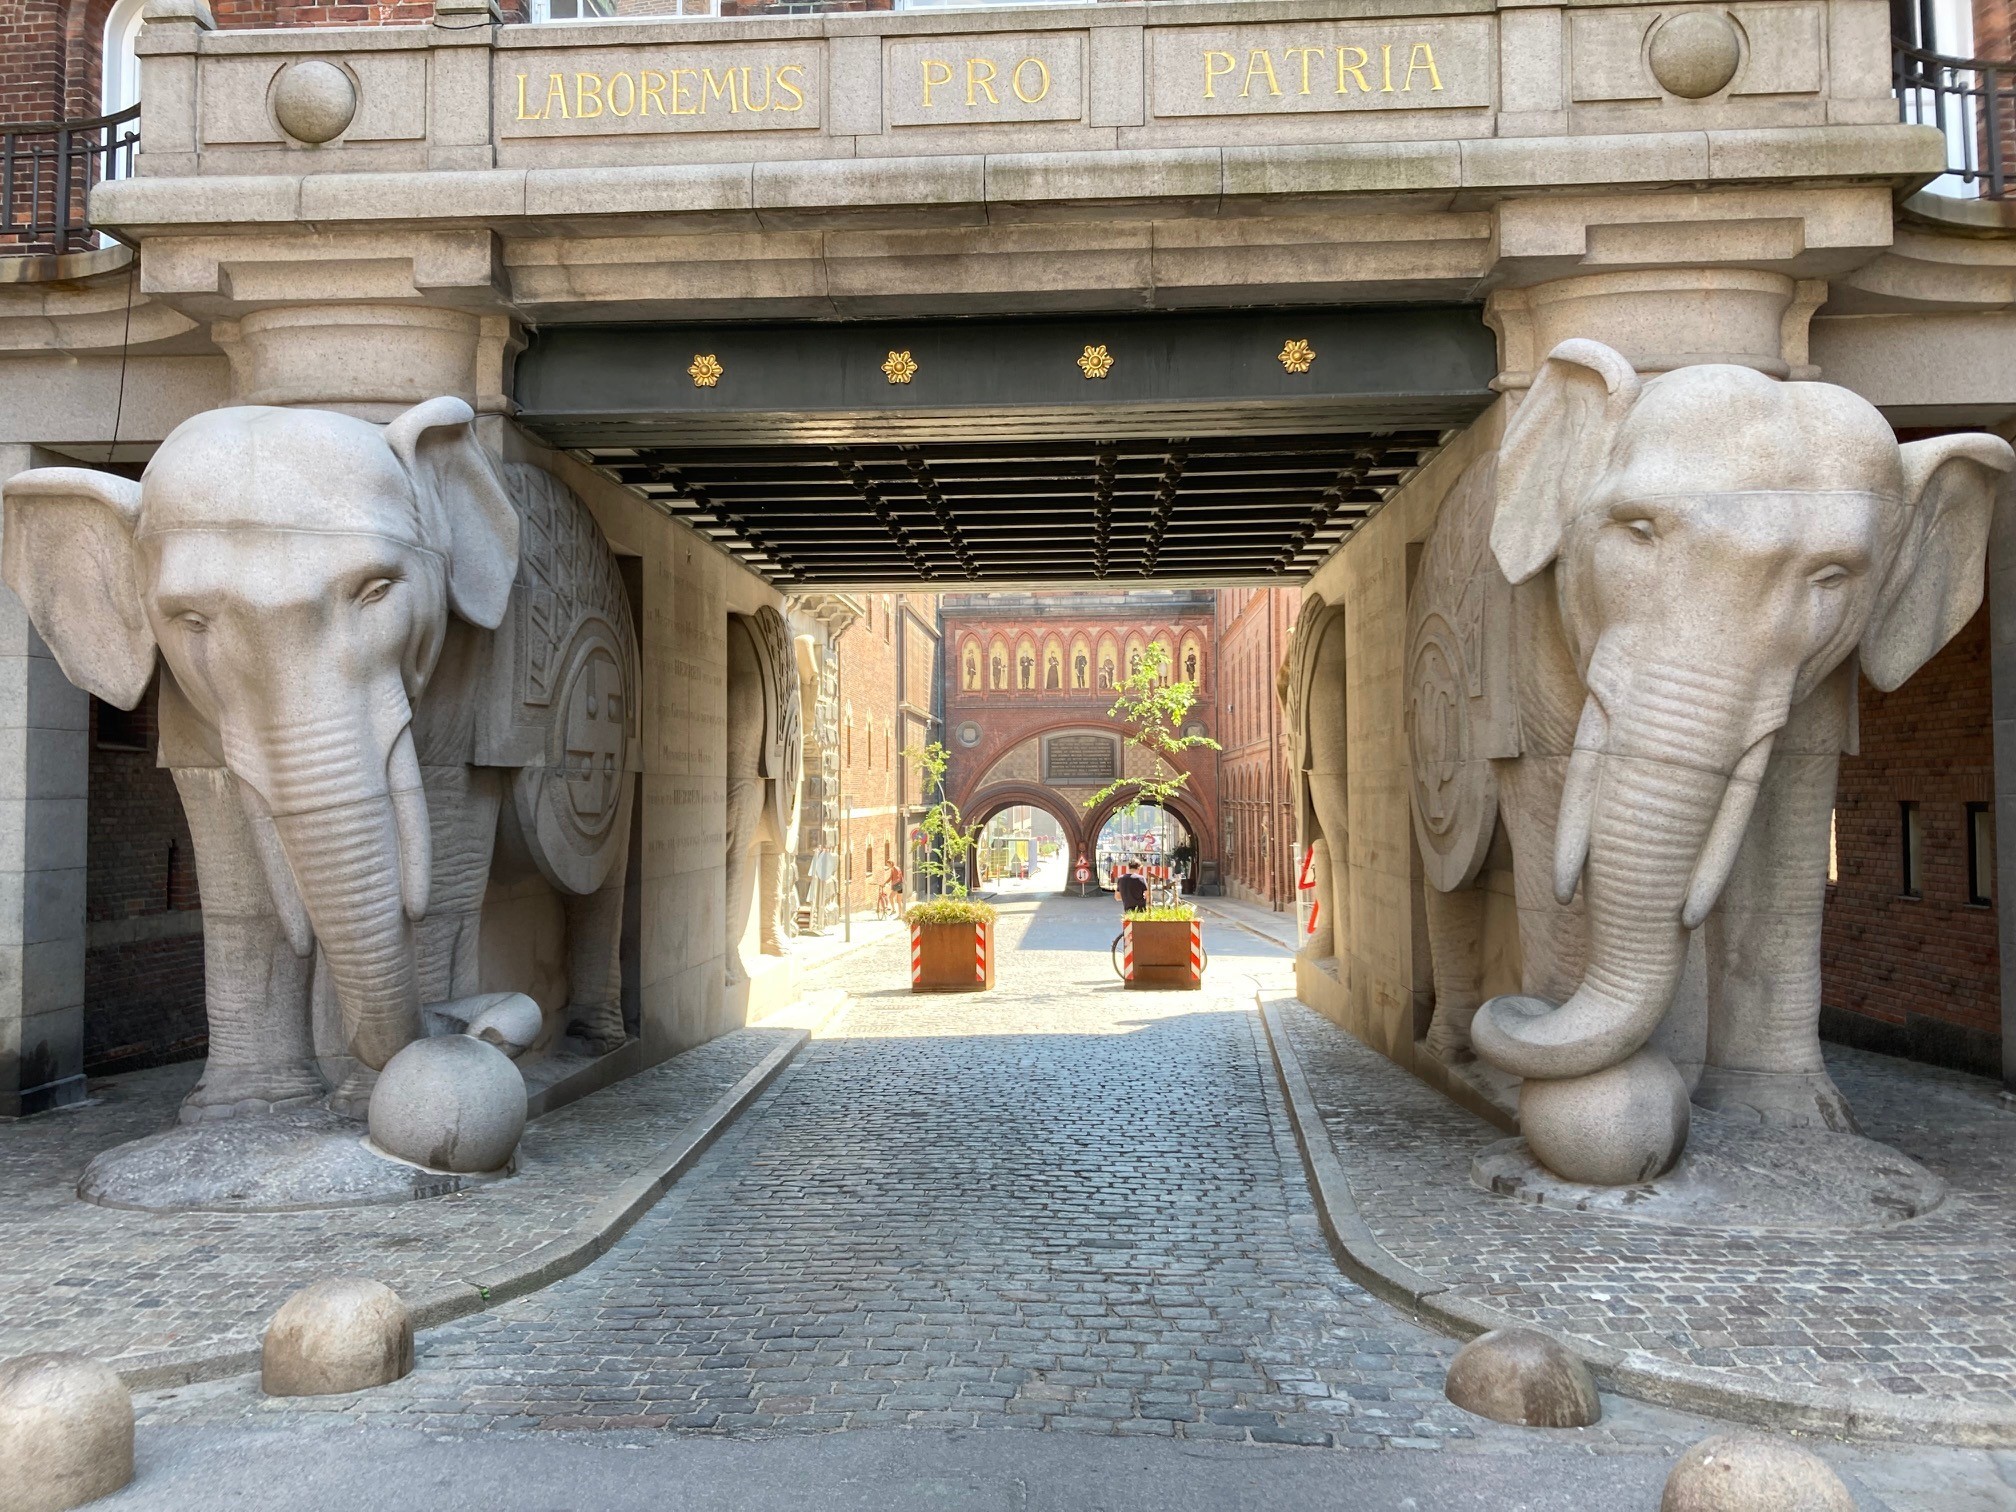 Elephants in Carlsberg City